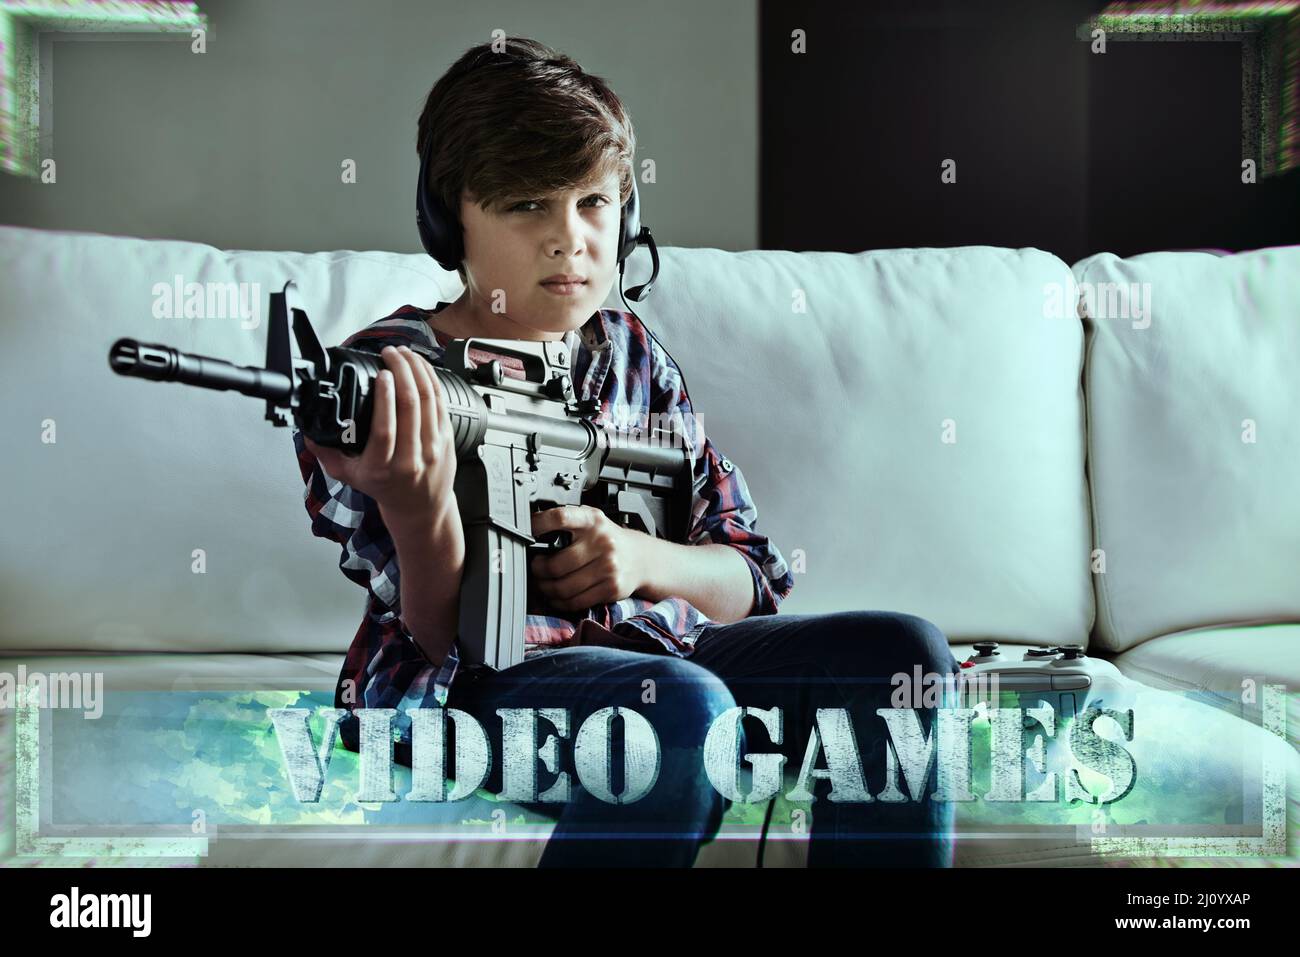 Temps de verrouillage et de chargement. Prise de vue d'un jeune garçon jouant à des jeux vidéo violents. Banque D'Images